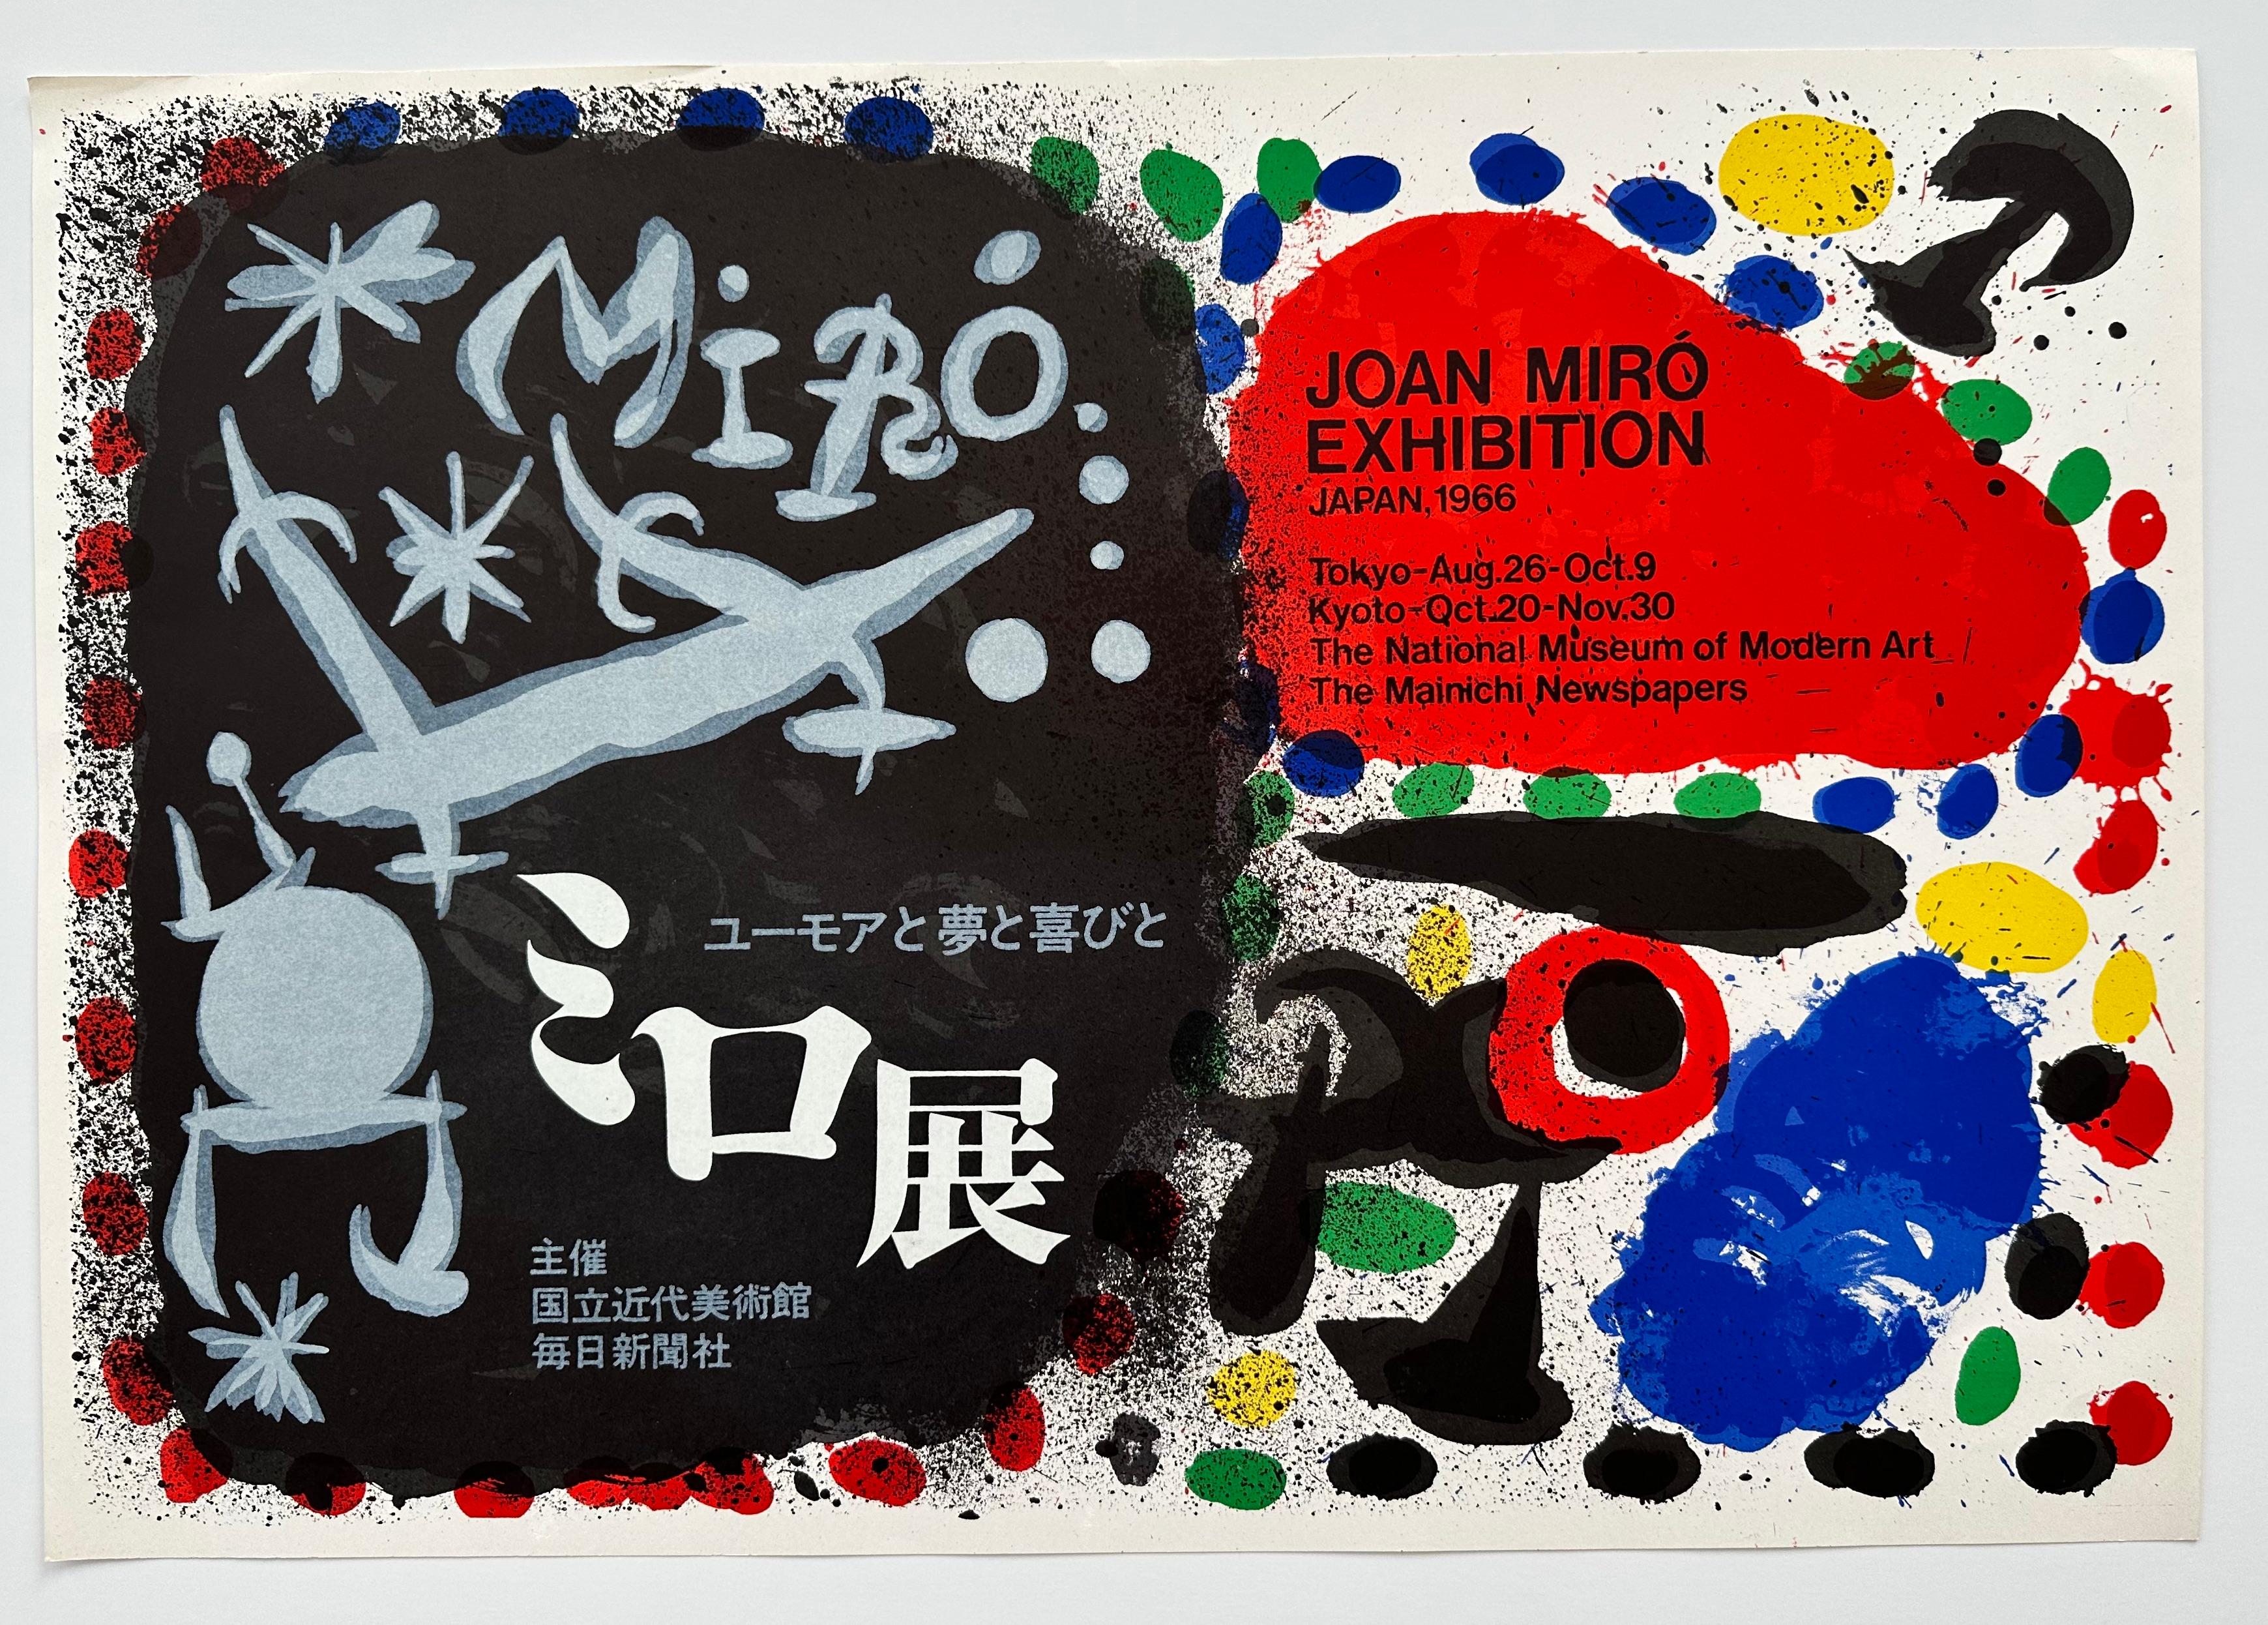 Abstract Print (after) Joan Miró - Affiche d'exposition japonaise de 1966, lithographie